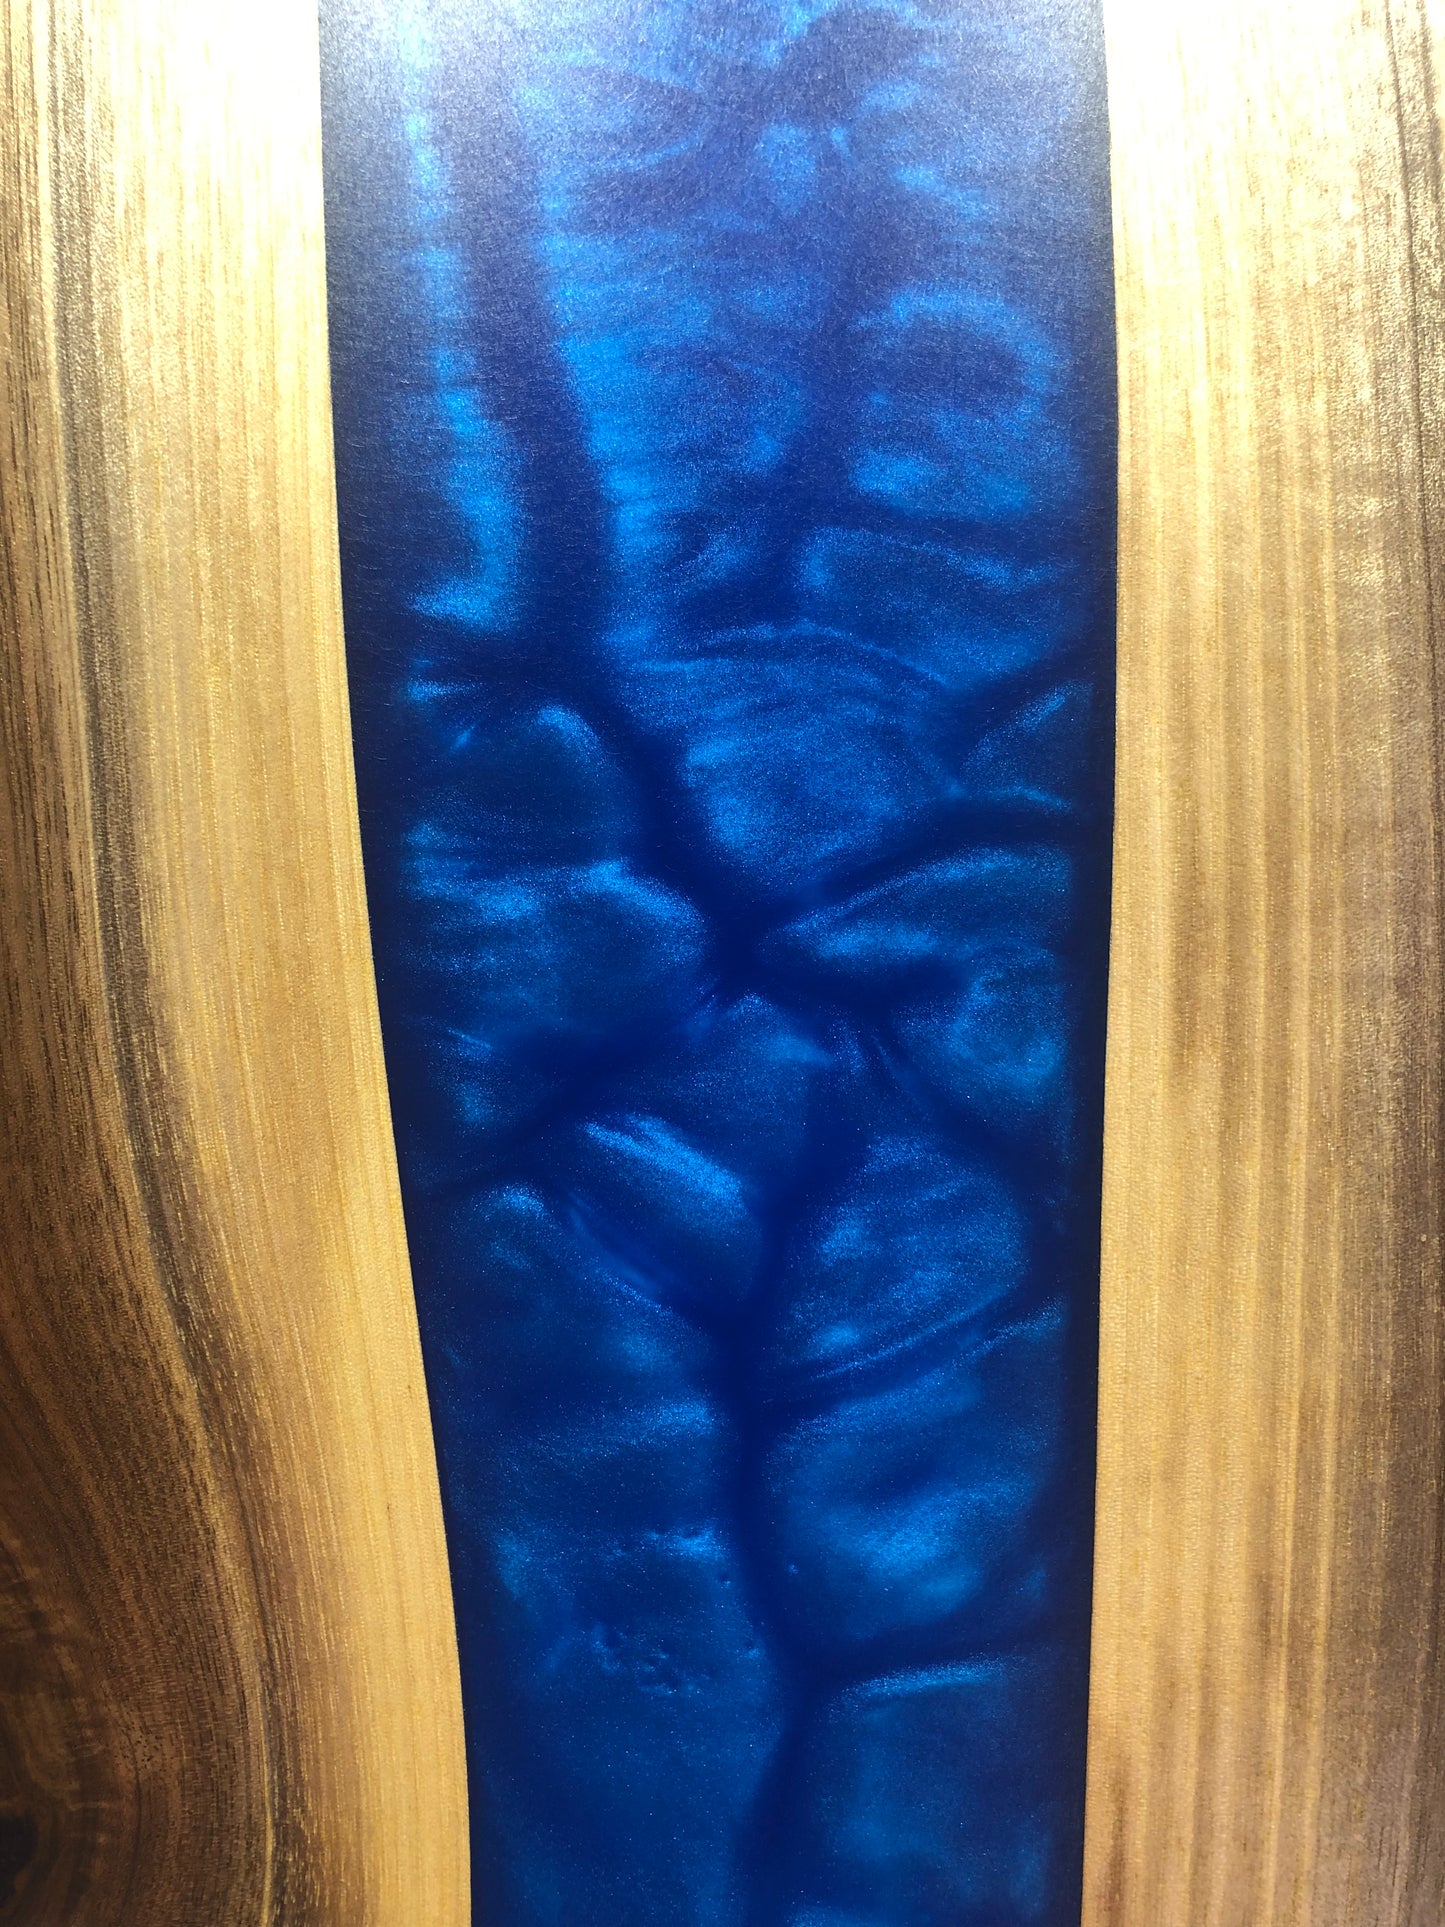 Black Walnut and Metallic Blue Charcuterie Board, 24"x12"